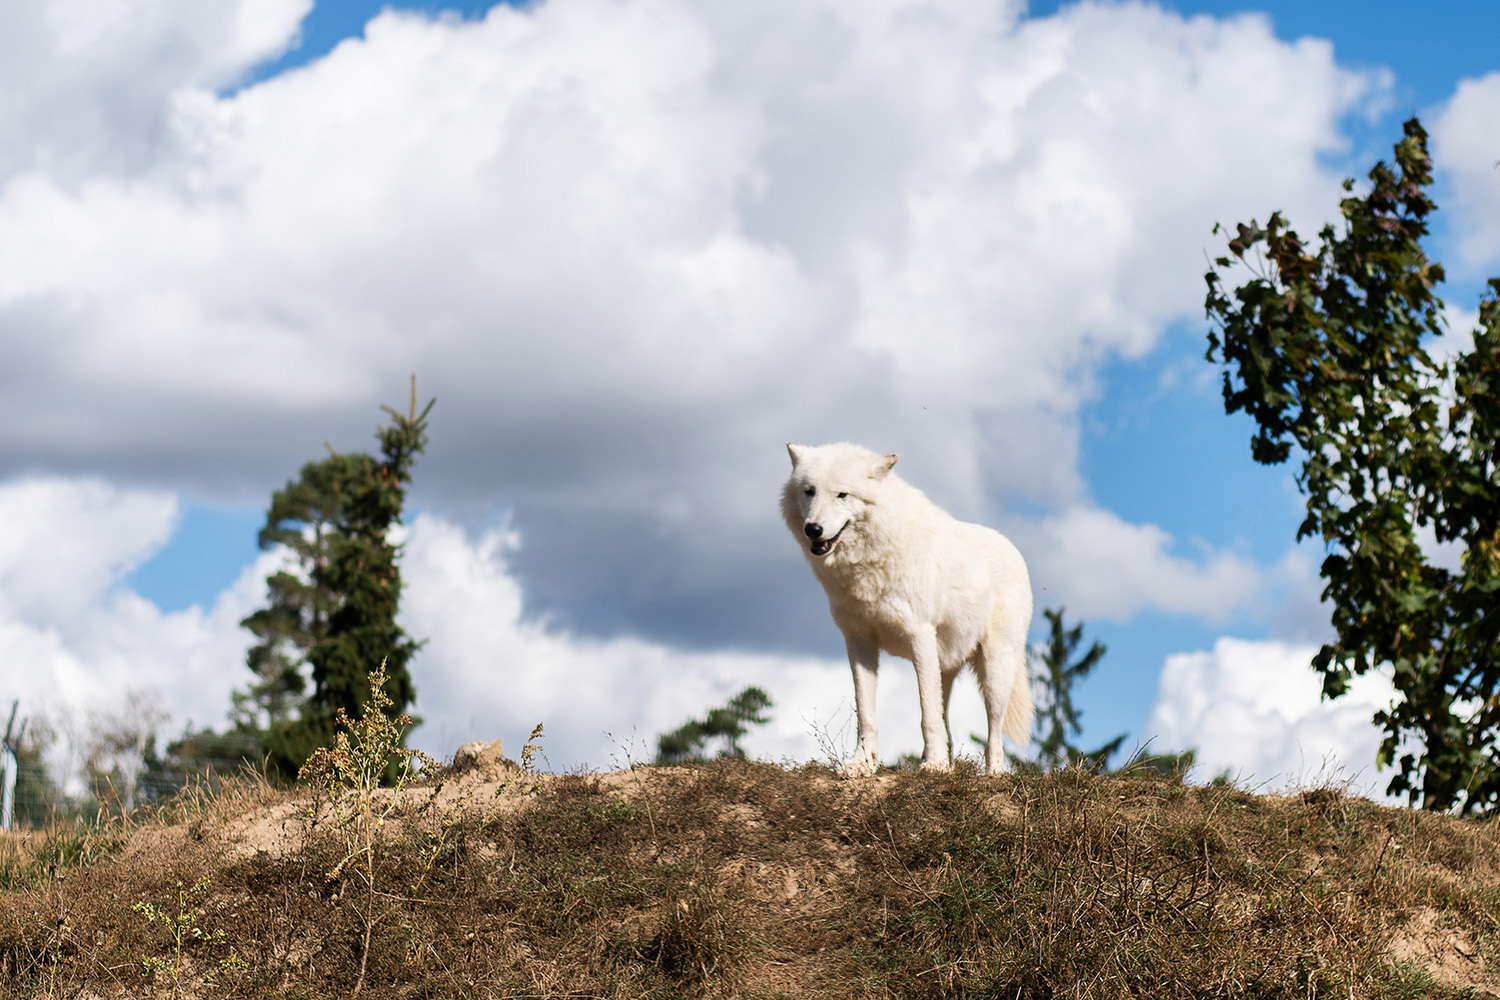 Bílý vlk